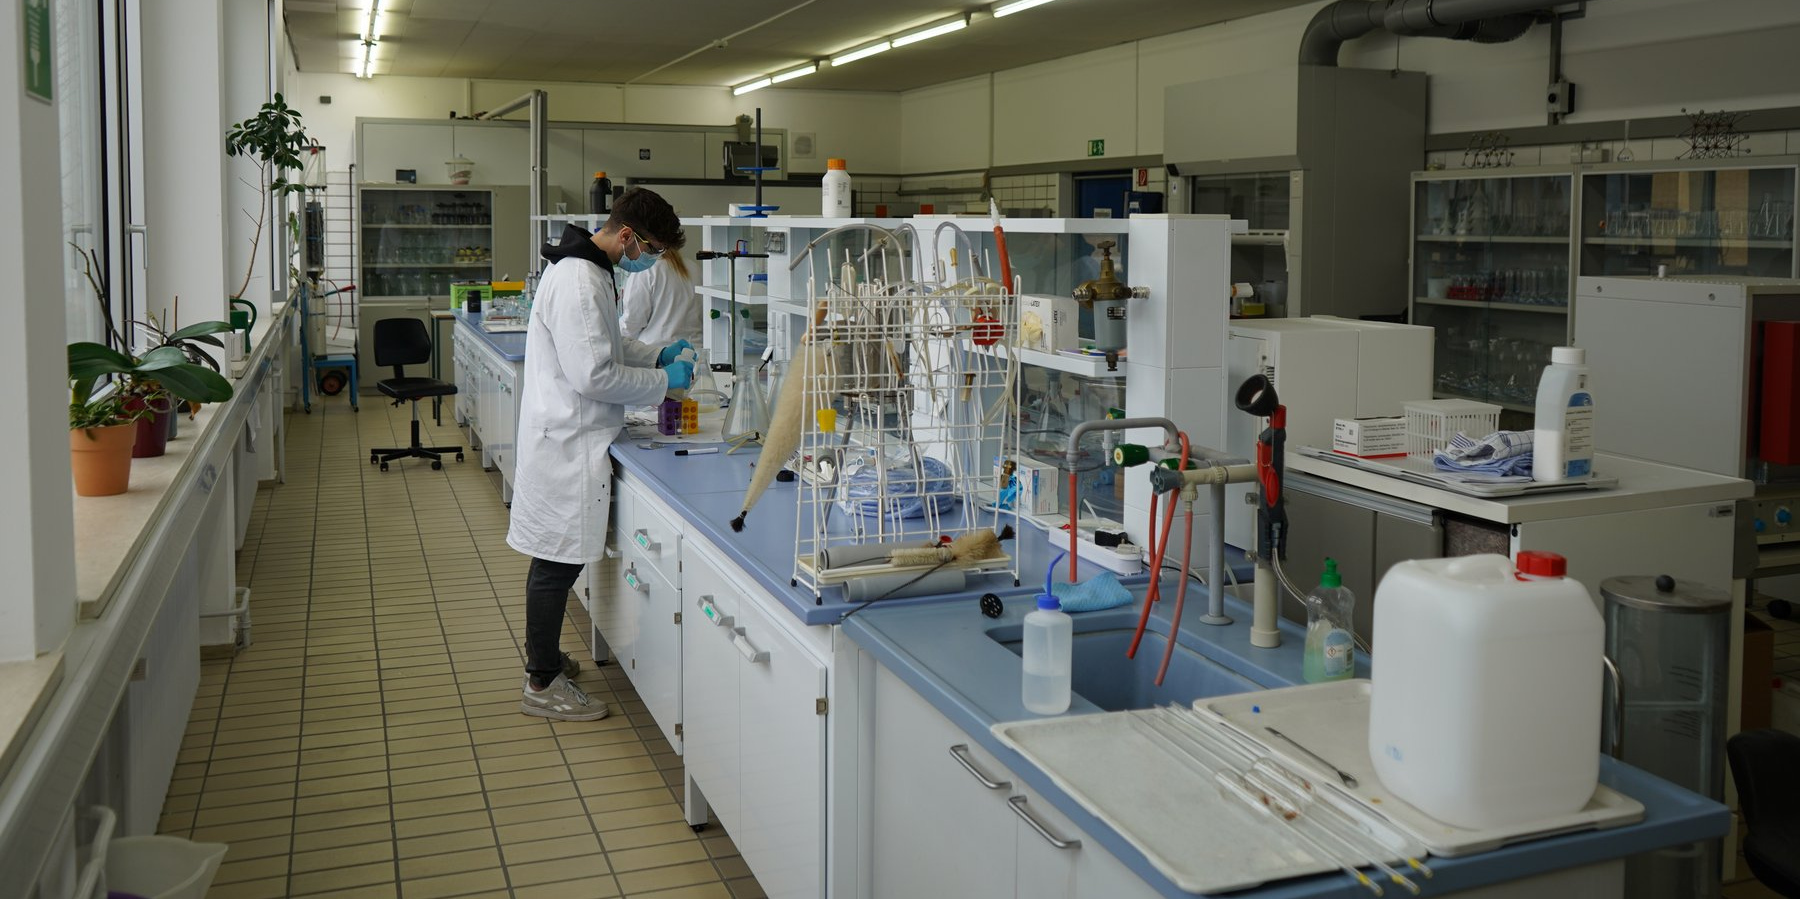 Laboreinrichtung - Aufnahme mit Person im Versuchslabor